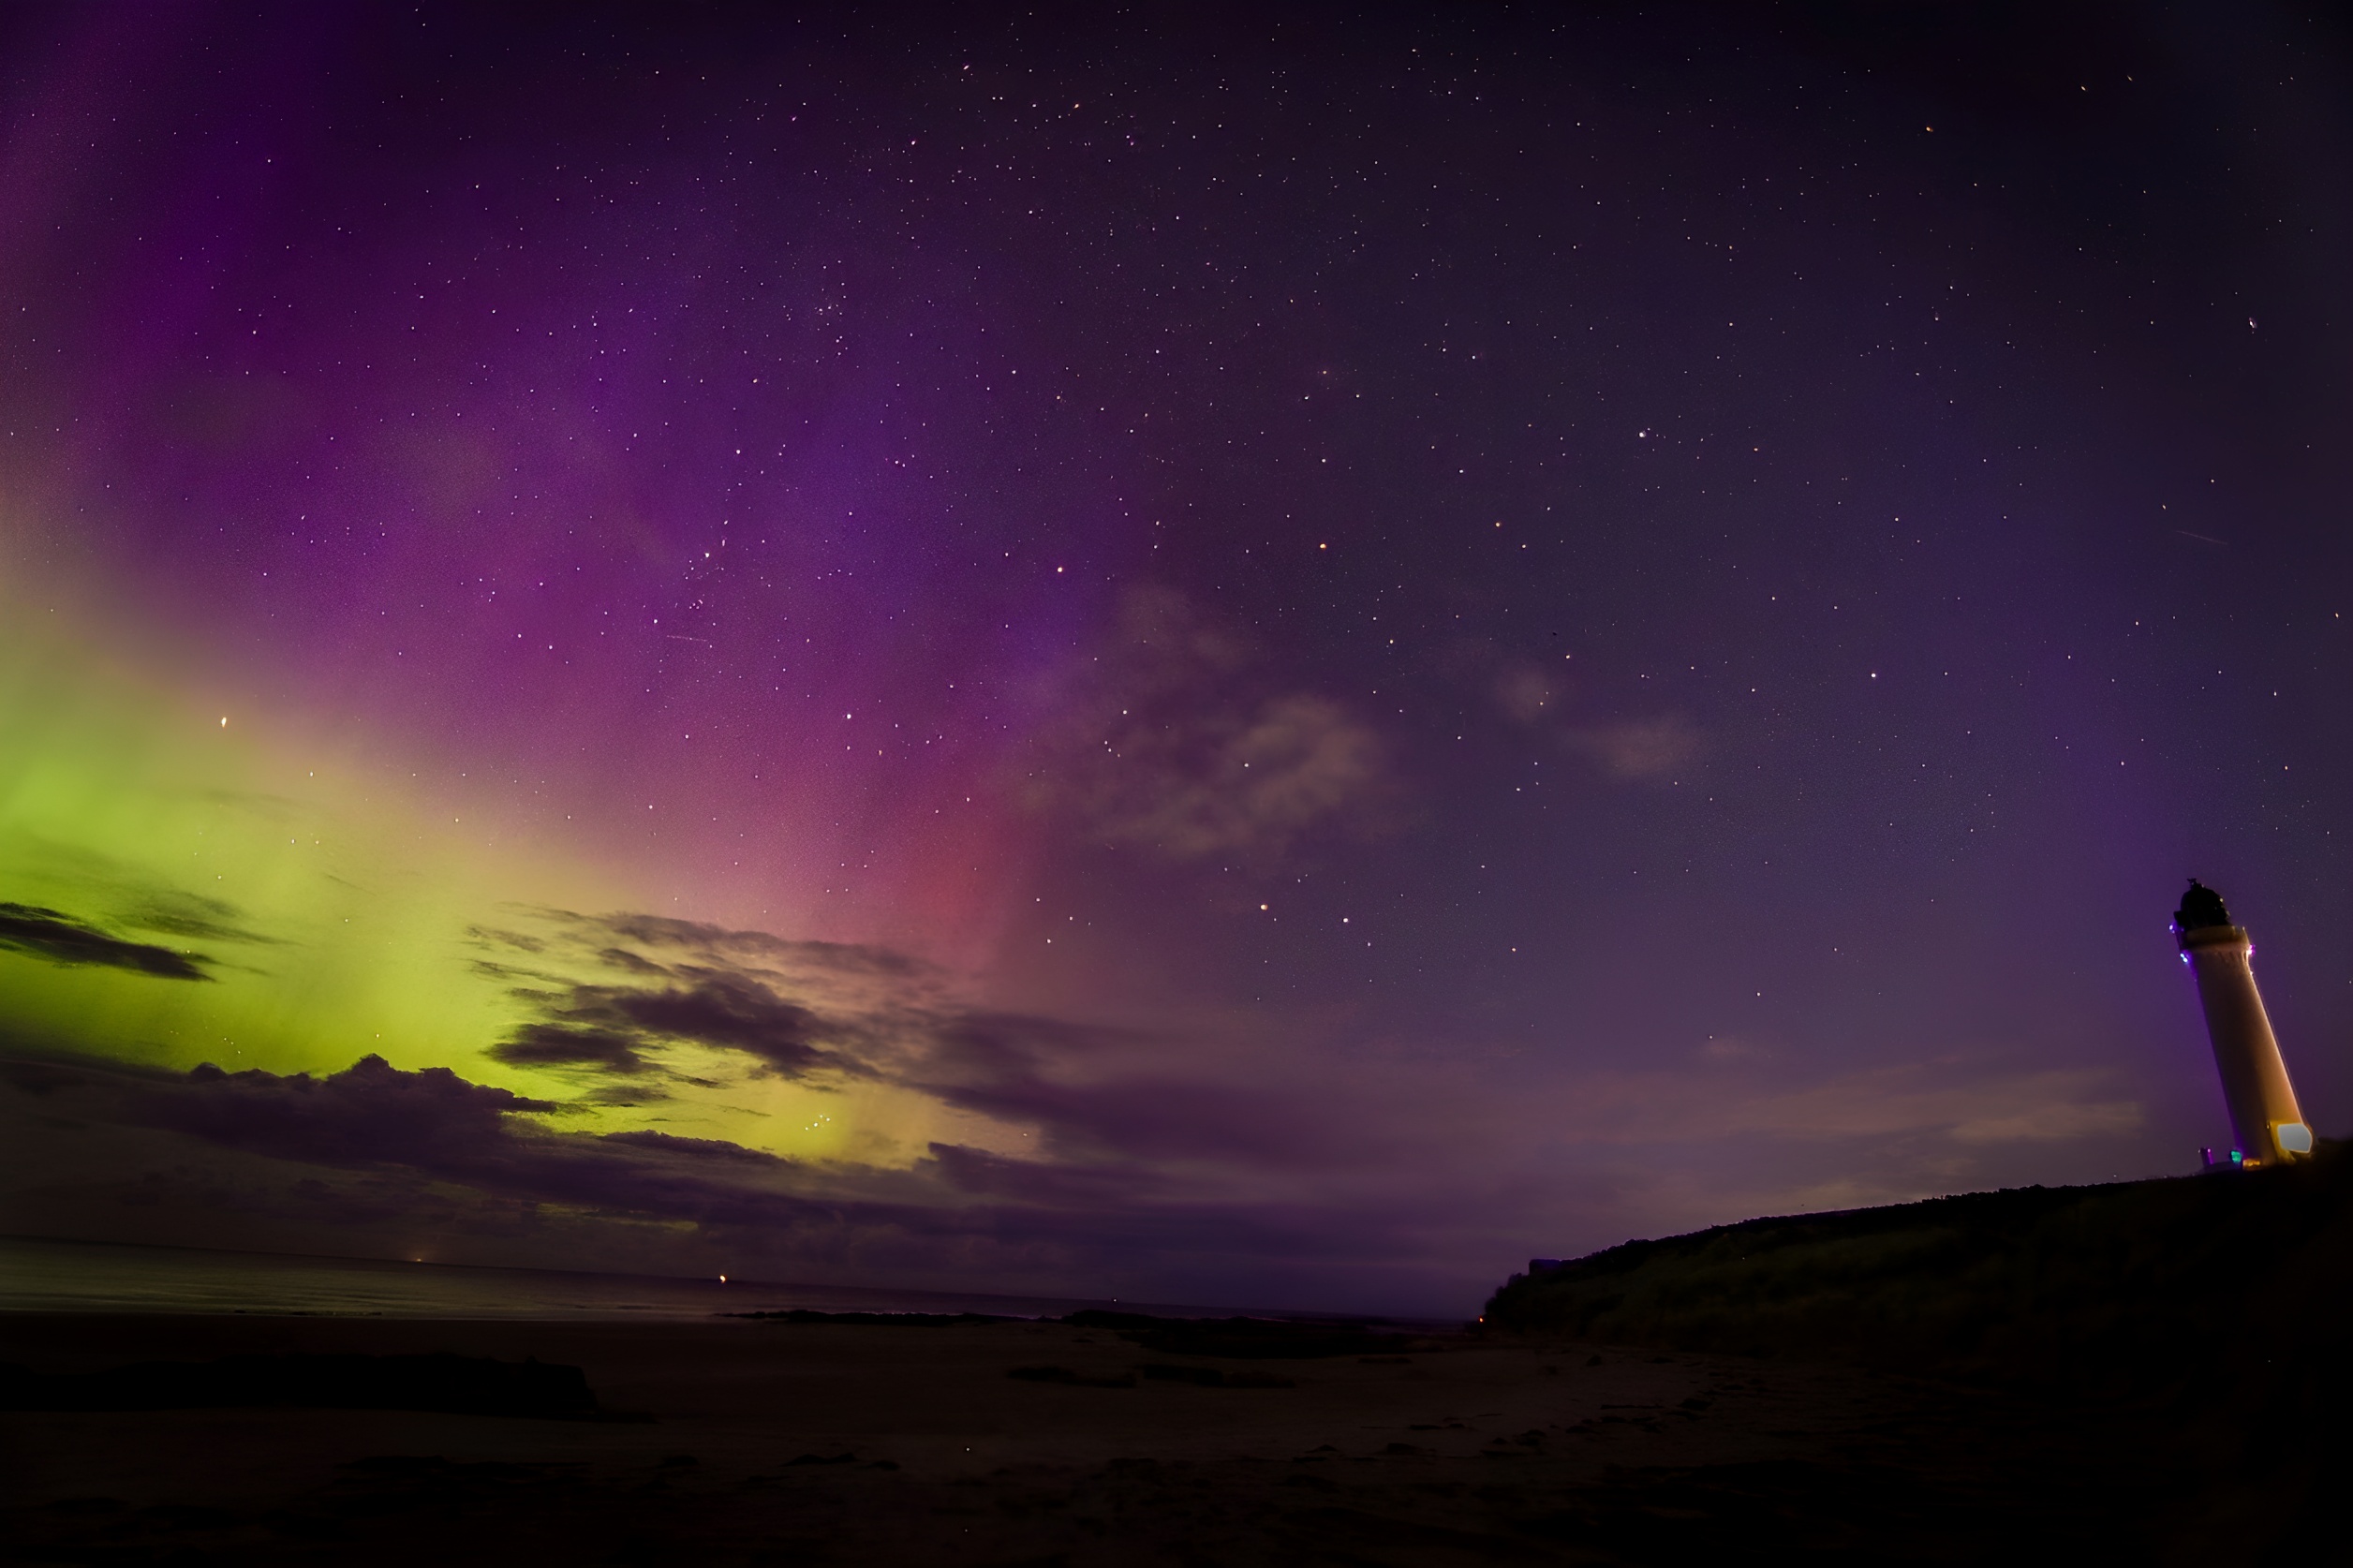 Zielono-fioletowa zorza polarna na niebie z małą latarnią morską po prawej stronie zdjęcia.